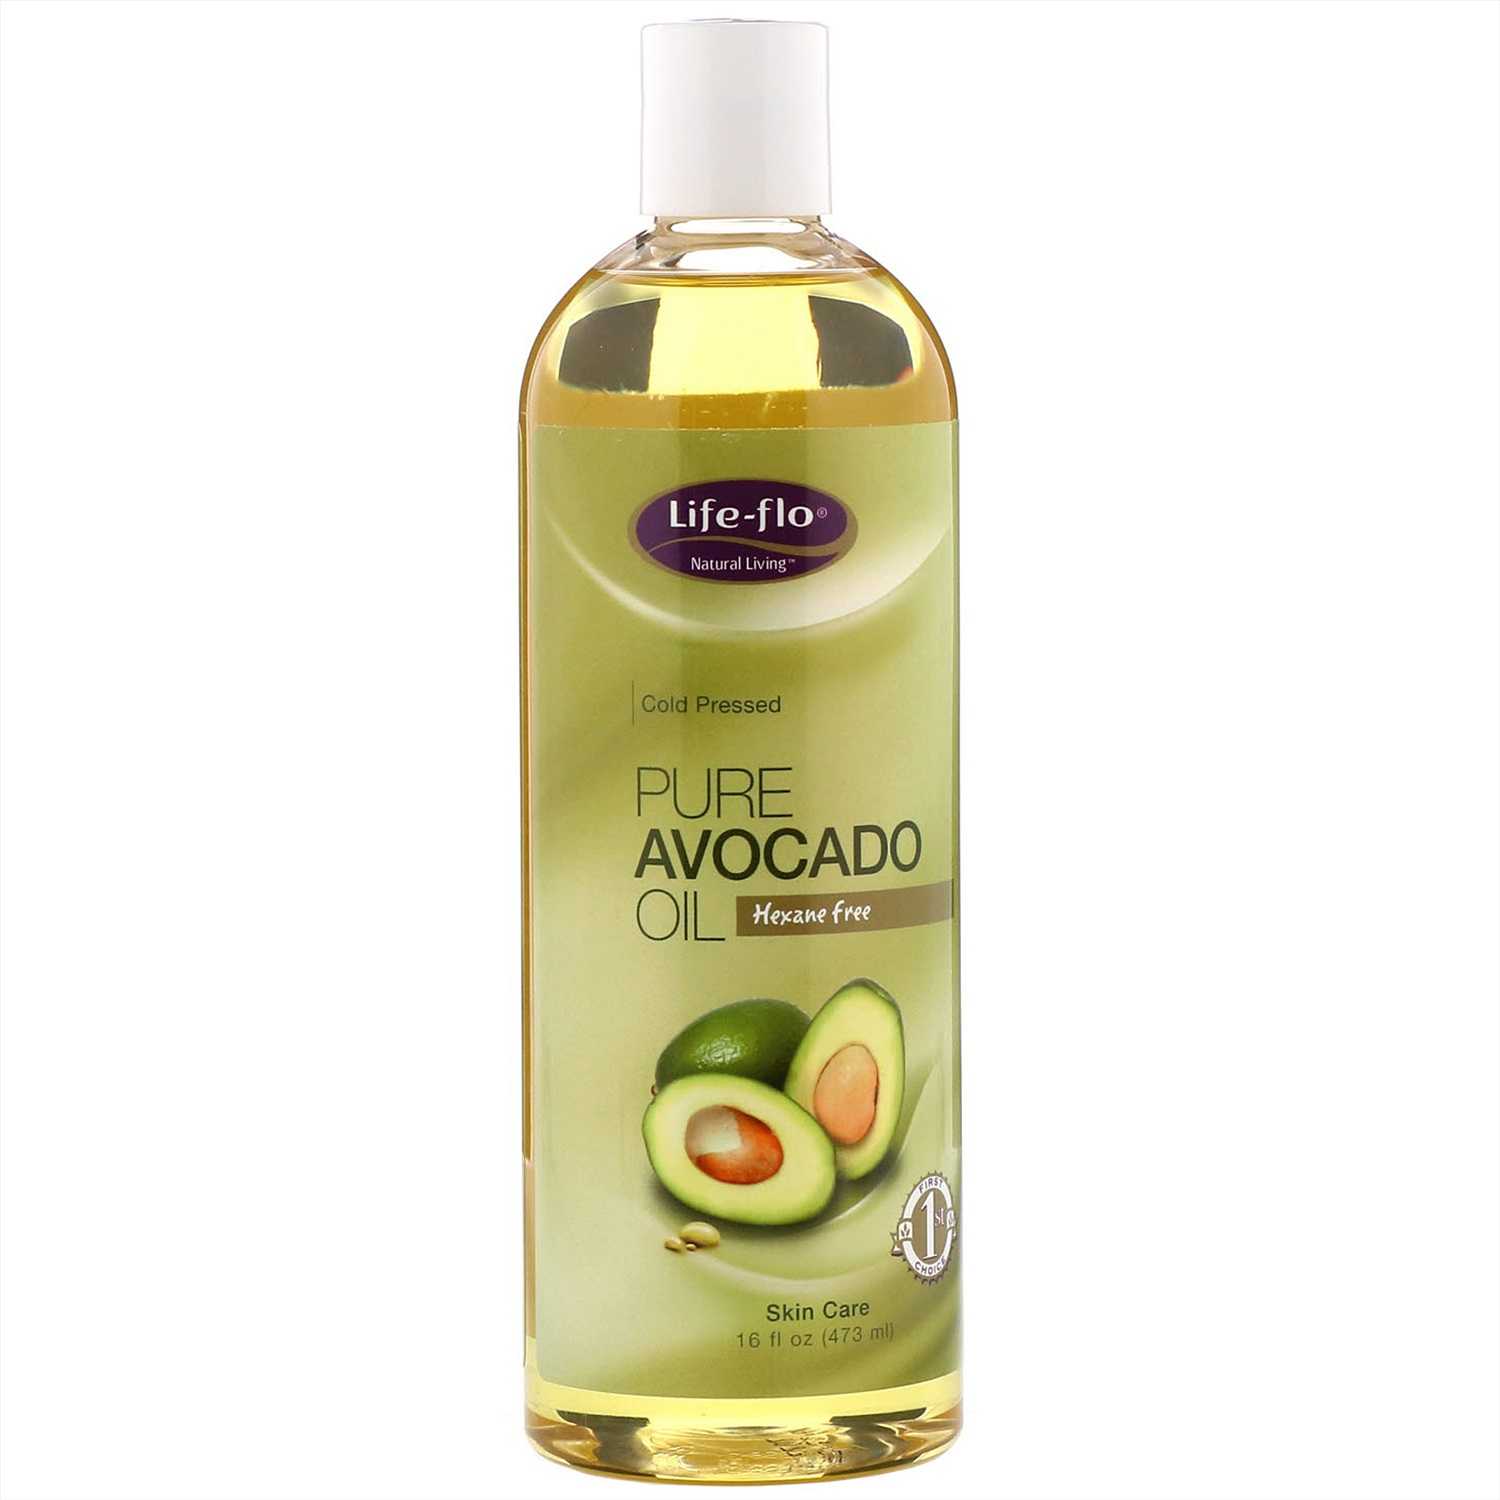 Учимся правильно использовать масло авокадо для ухода за волосами: хитрости применения средства, эффективные рецепты домашних масок и отзывы покупателей